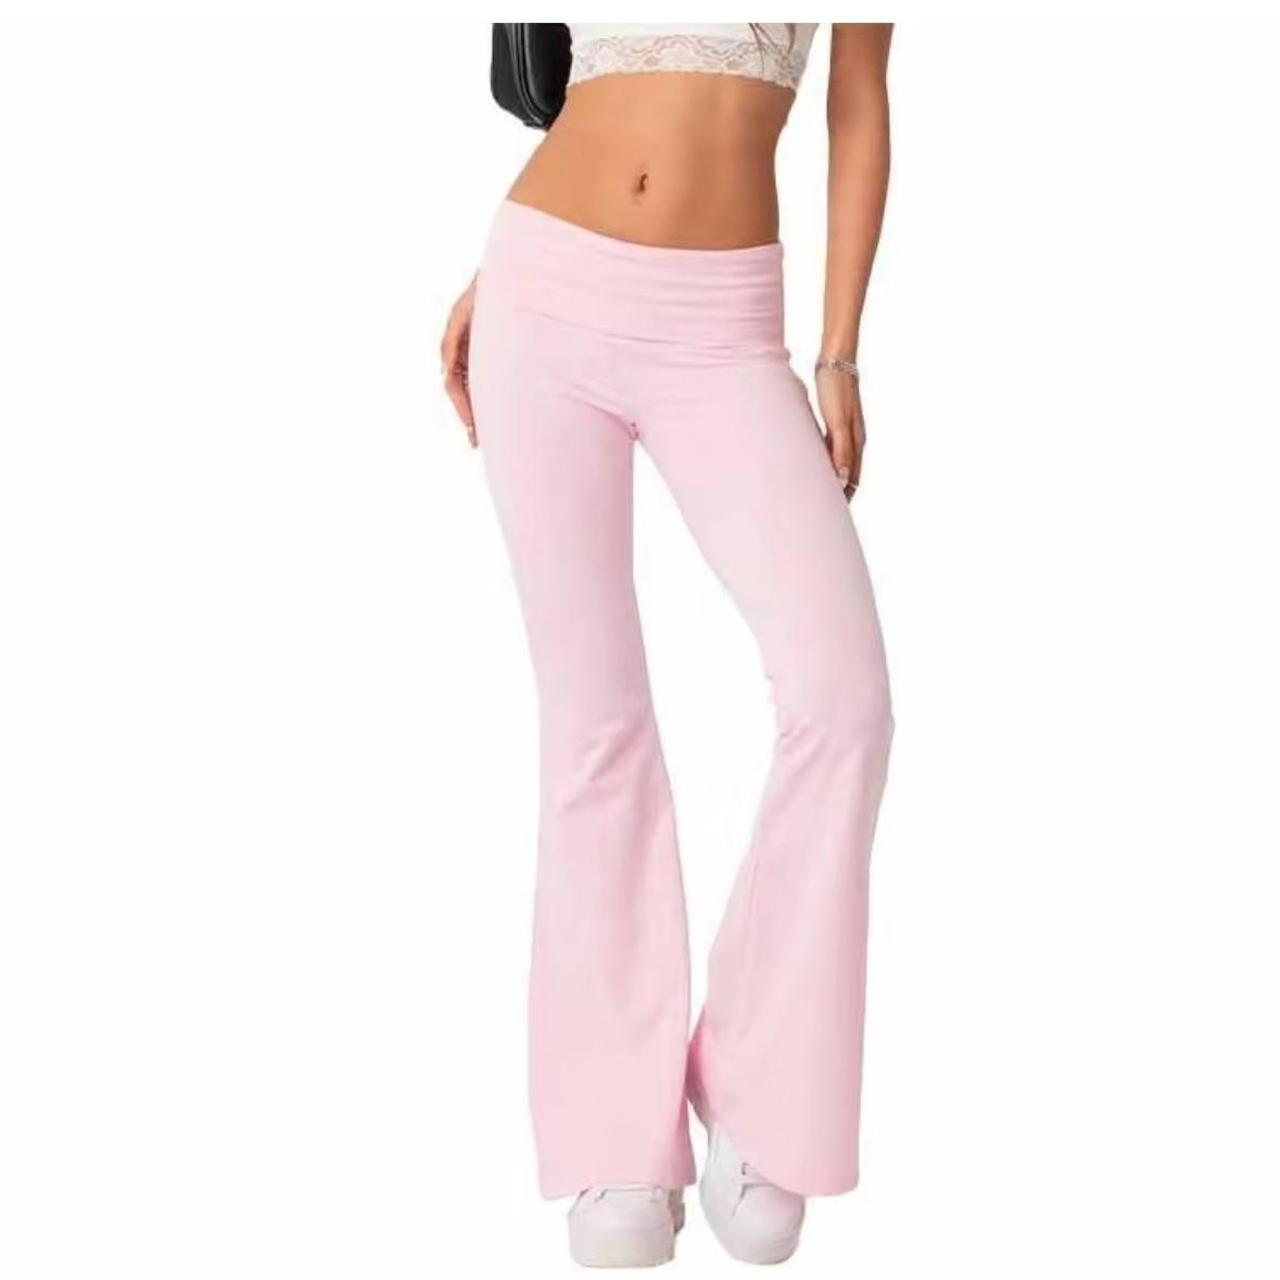 Light pink flare Foldover leggings, not short girl - Depop